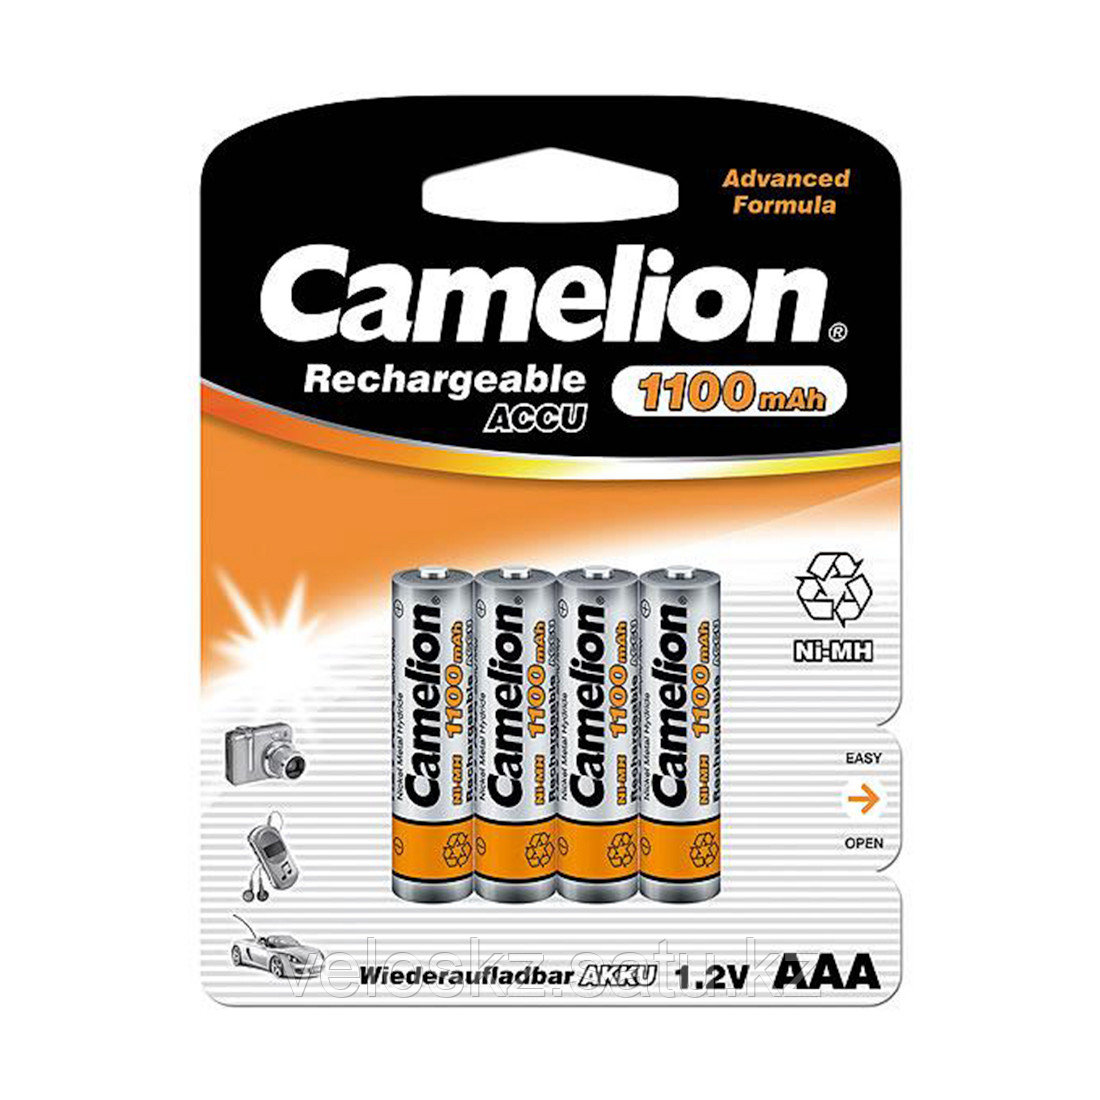 Camelion Аккумулятор AAA, CAMELION, NH-AAA1100BP4, Lockbox Rechargeable, 1.2V, 1100 mAh, 4 шт. в блистер